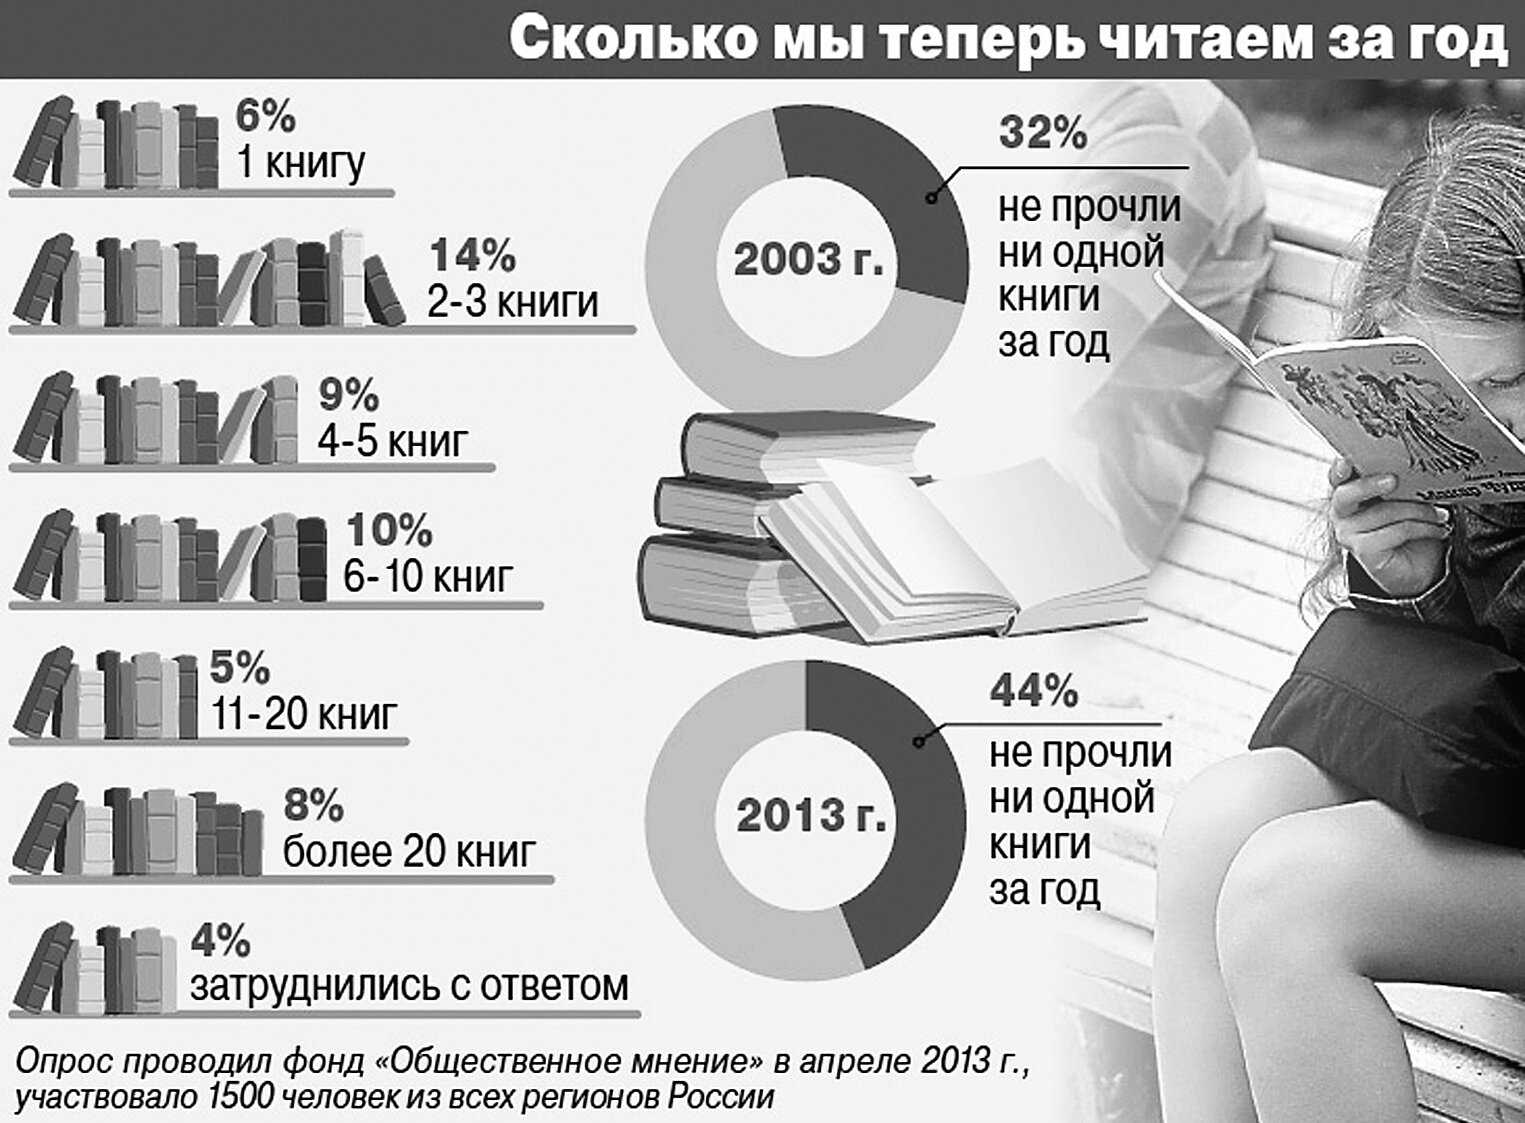 Сколько переводят книгу. Статистика чтения книг. Процент людей читающих книги. Сколько людей читают книги. Сколько книг читать в год.